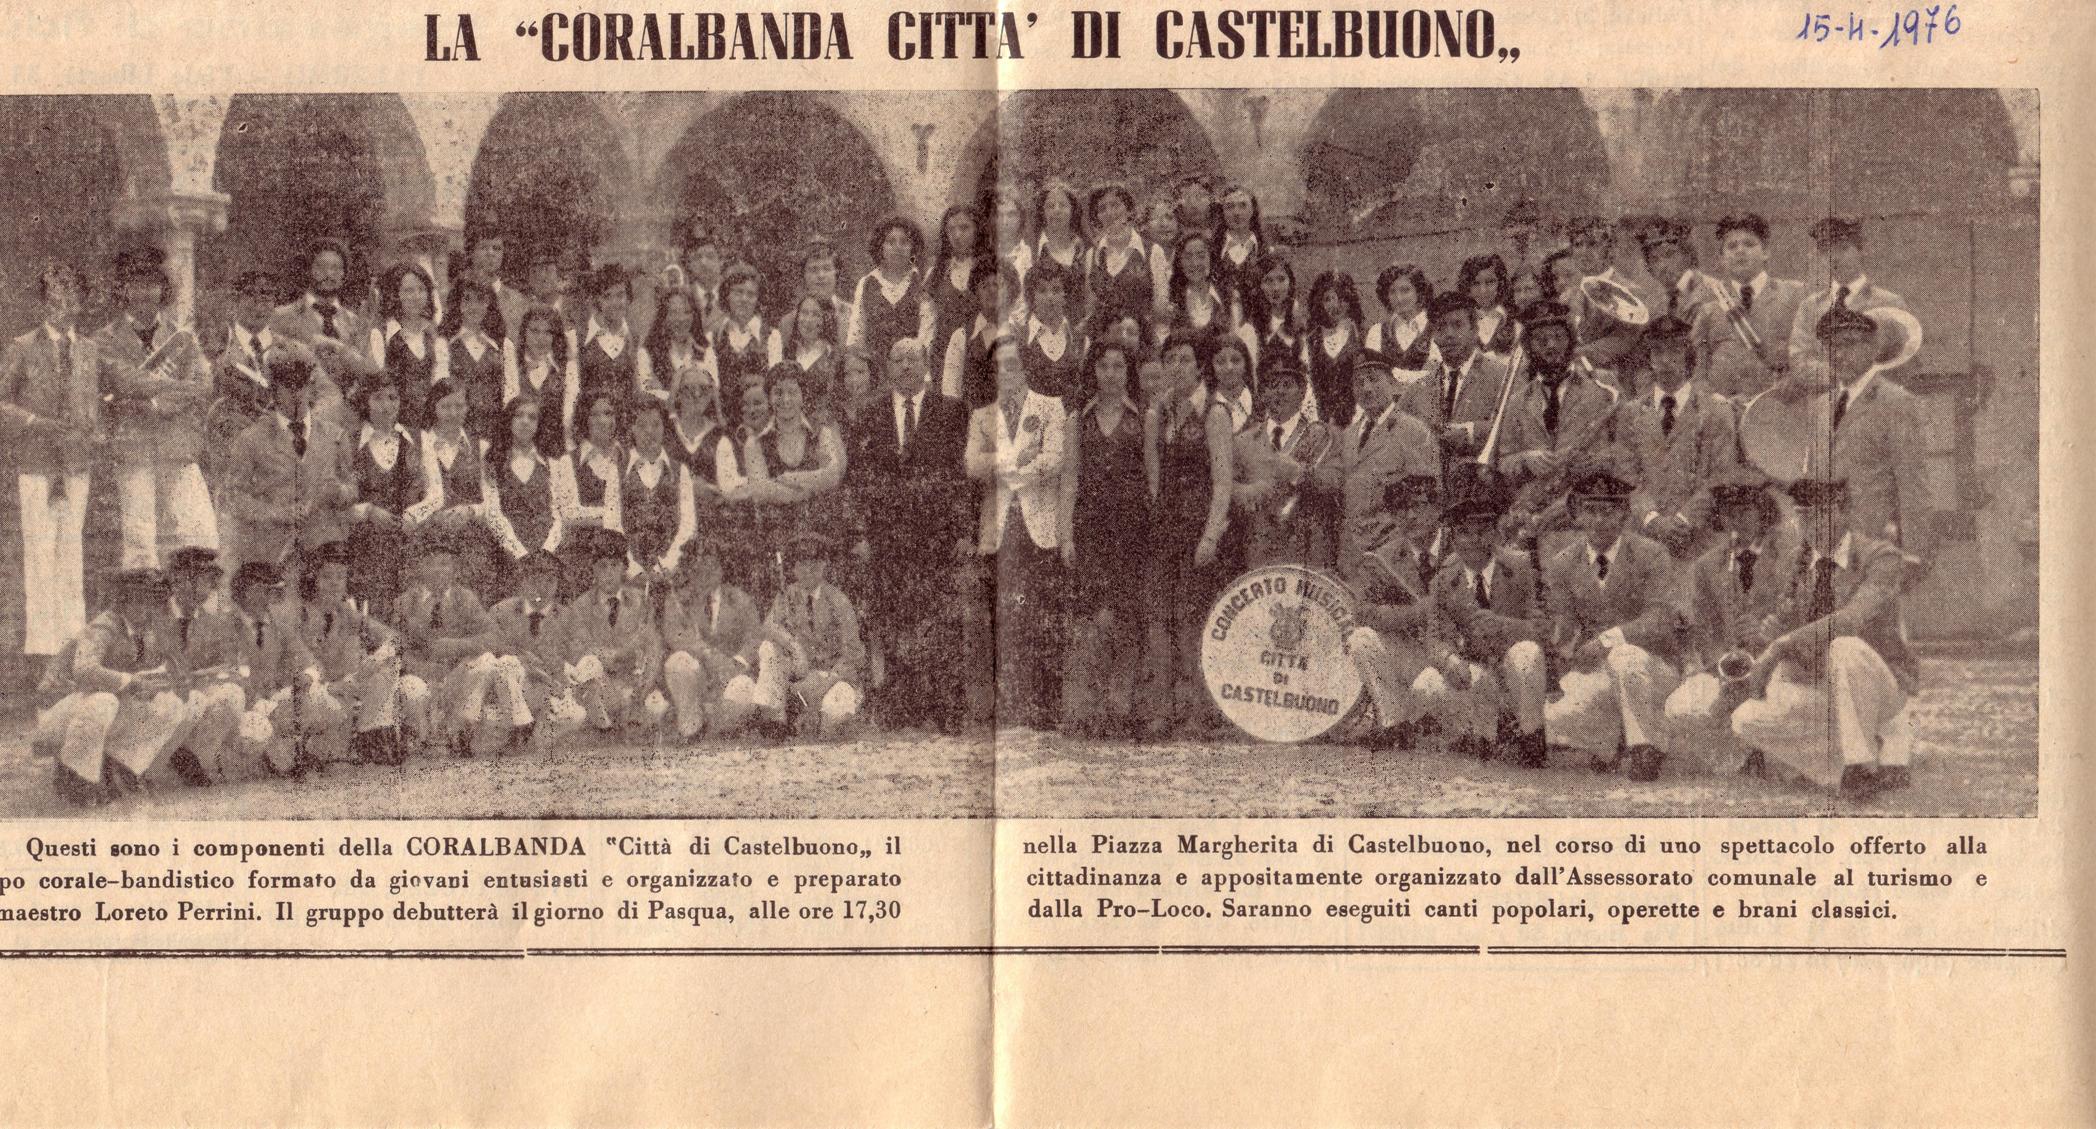 La fondazione della Coralbanda Città di Castelbuono